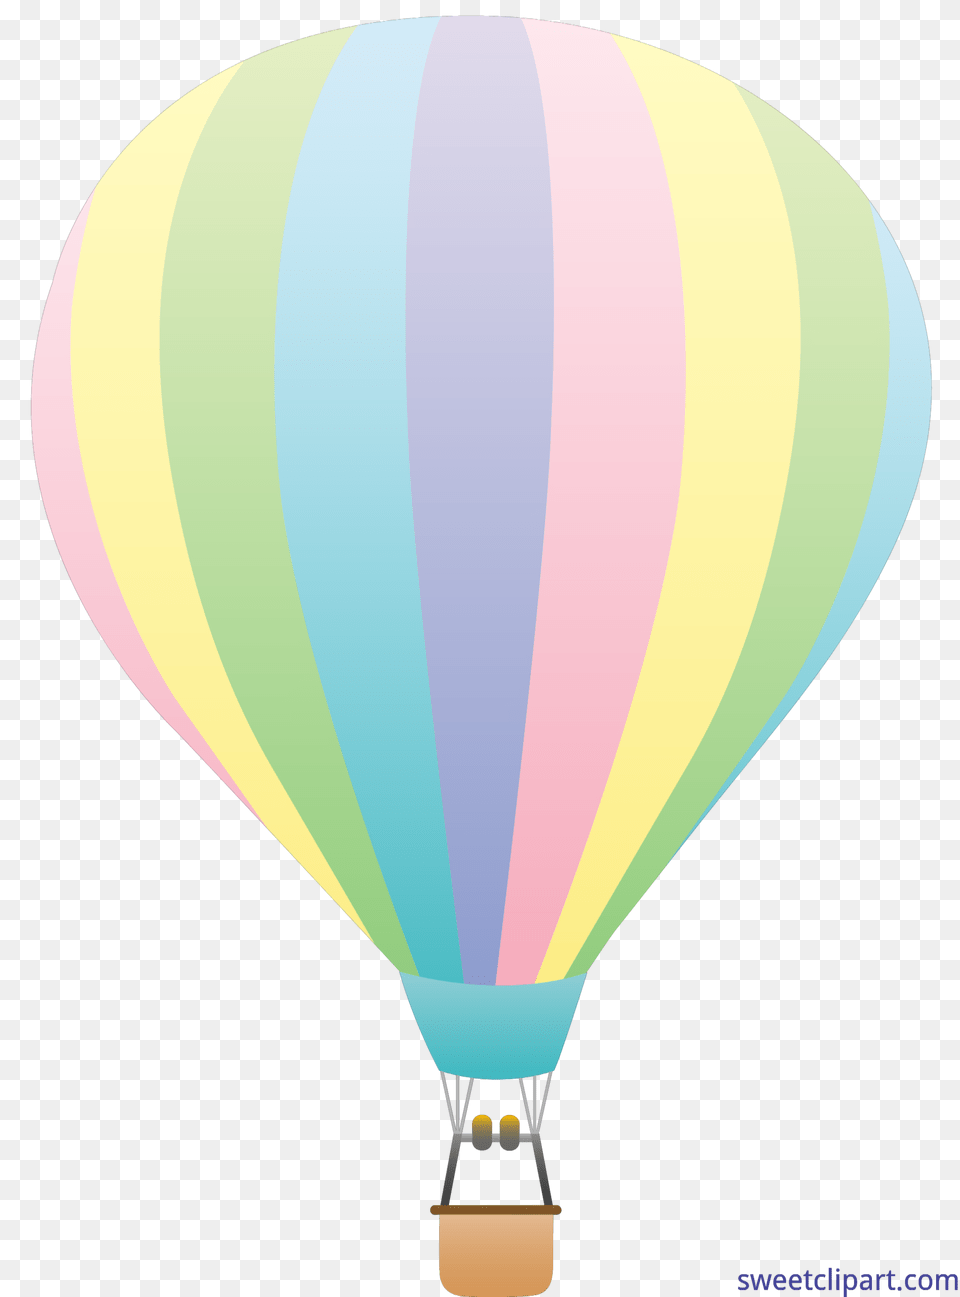 Hot Air Balloon Pastel Clip Art, Aircraft, Transportation, Vehicle, Hot Air Balloon Png Image